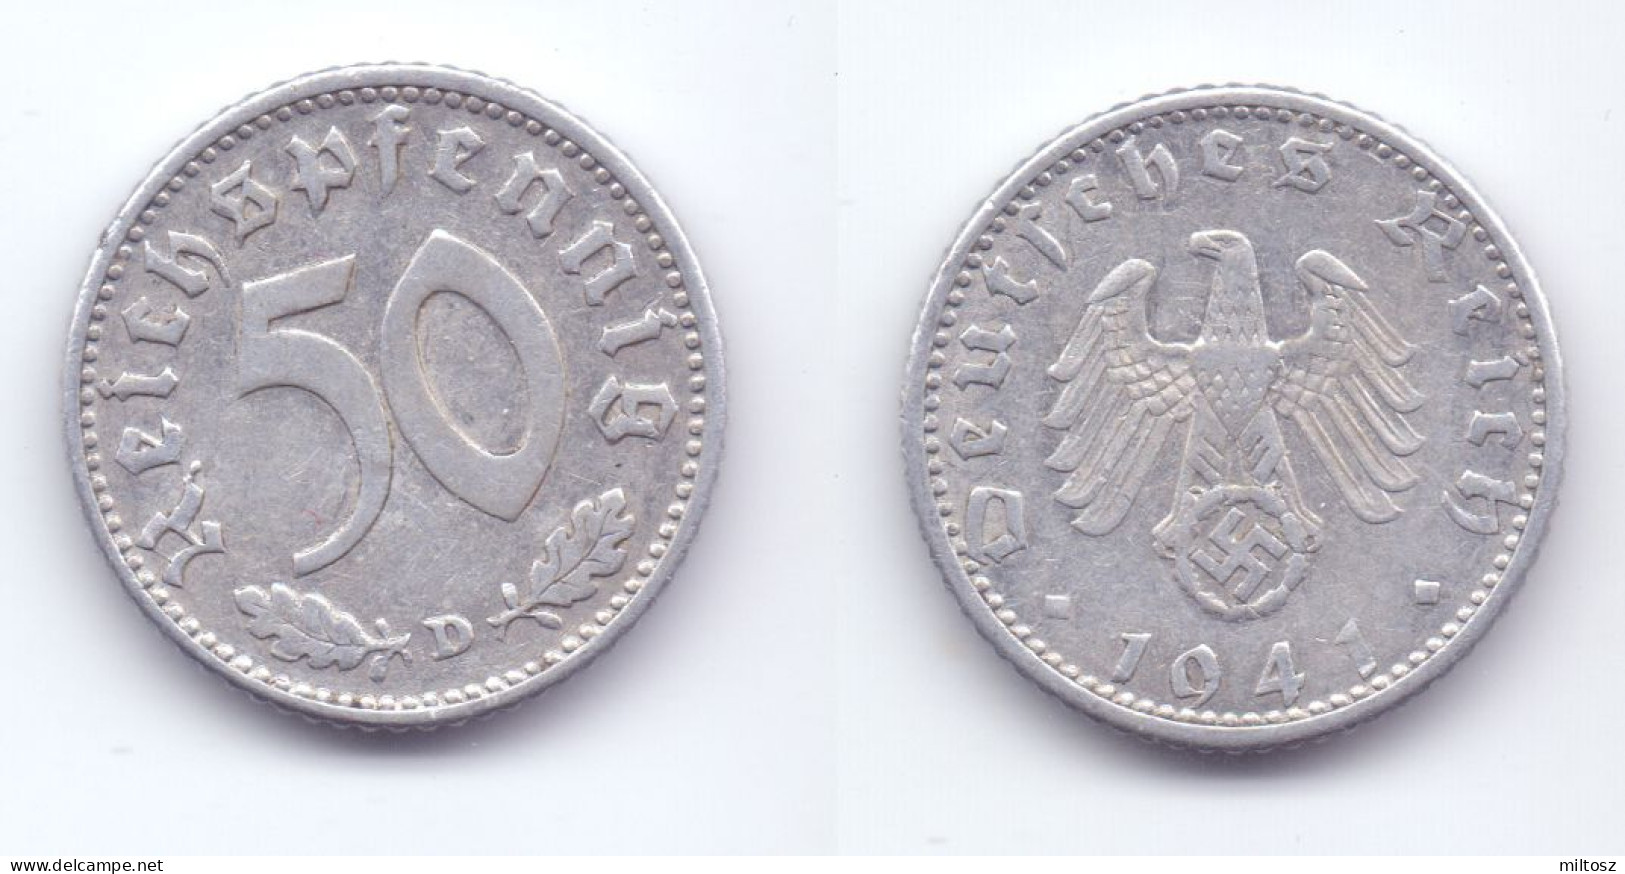 Germany 50 Reichspfennig 1941 D WWII Issue - 50 Reichspfennig